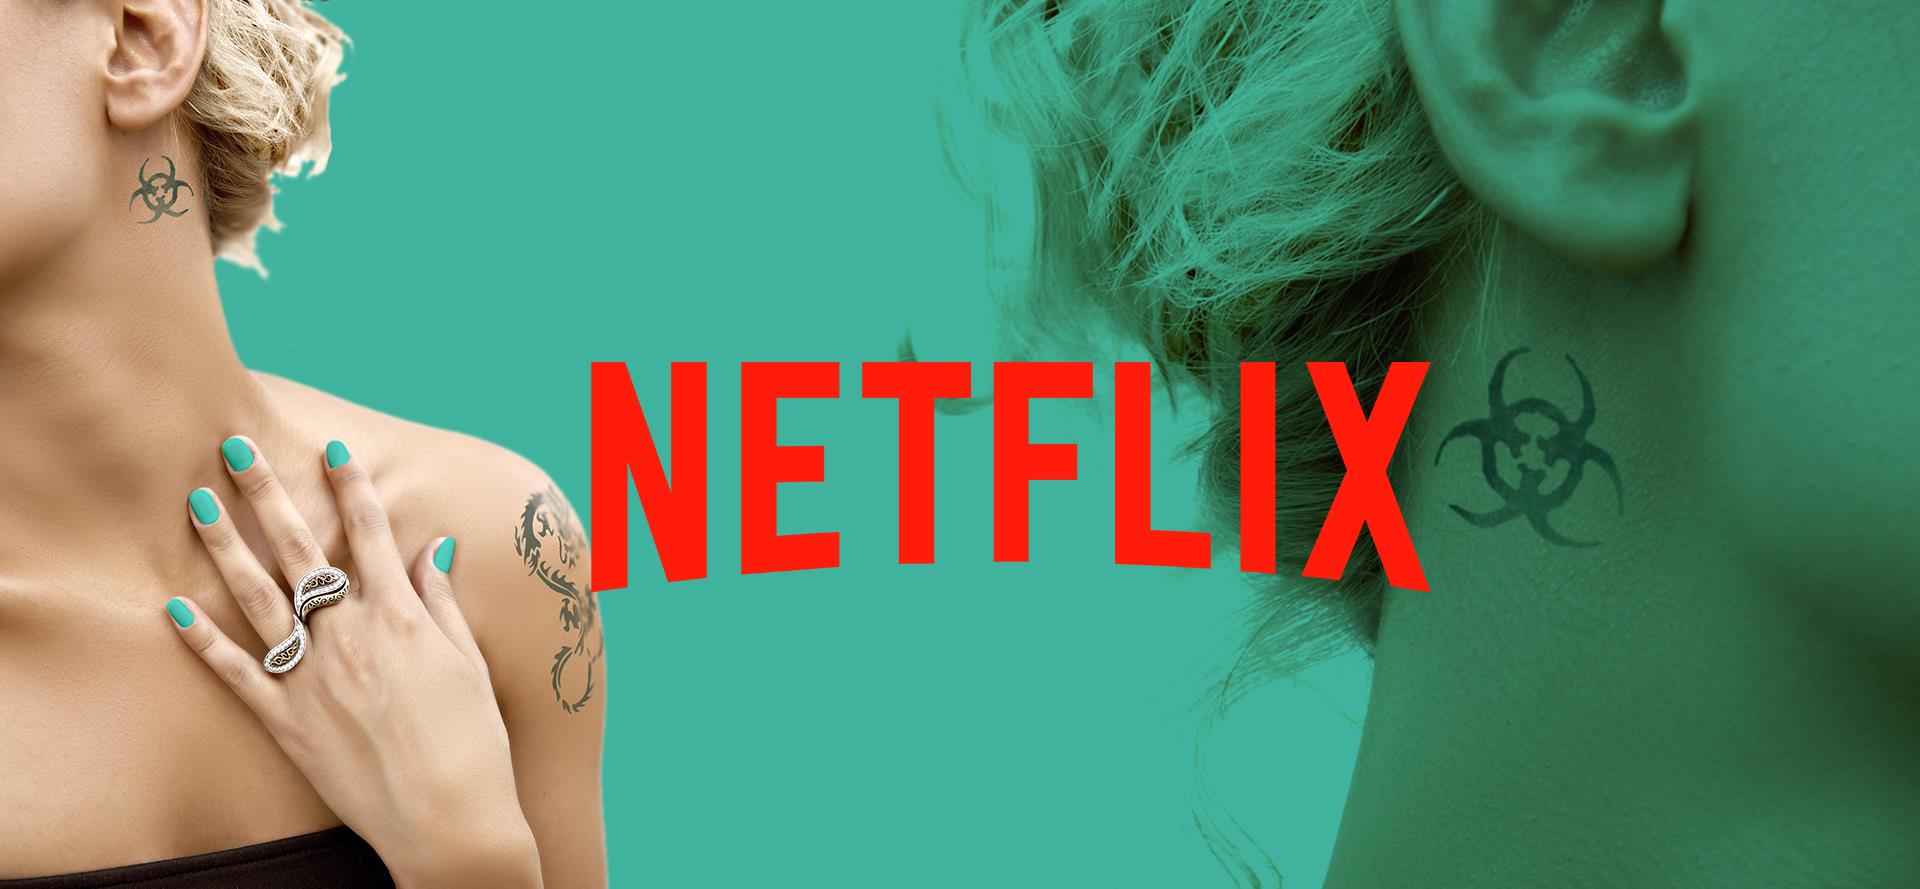 Egy iskolapszichológus könyvet írt a szexről, ami olyan jól sikerült, hogy hamarosan a Netflixen is látni lehet majd!